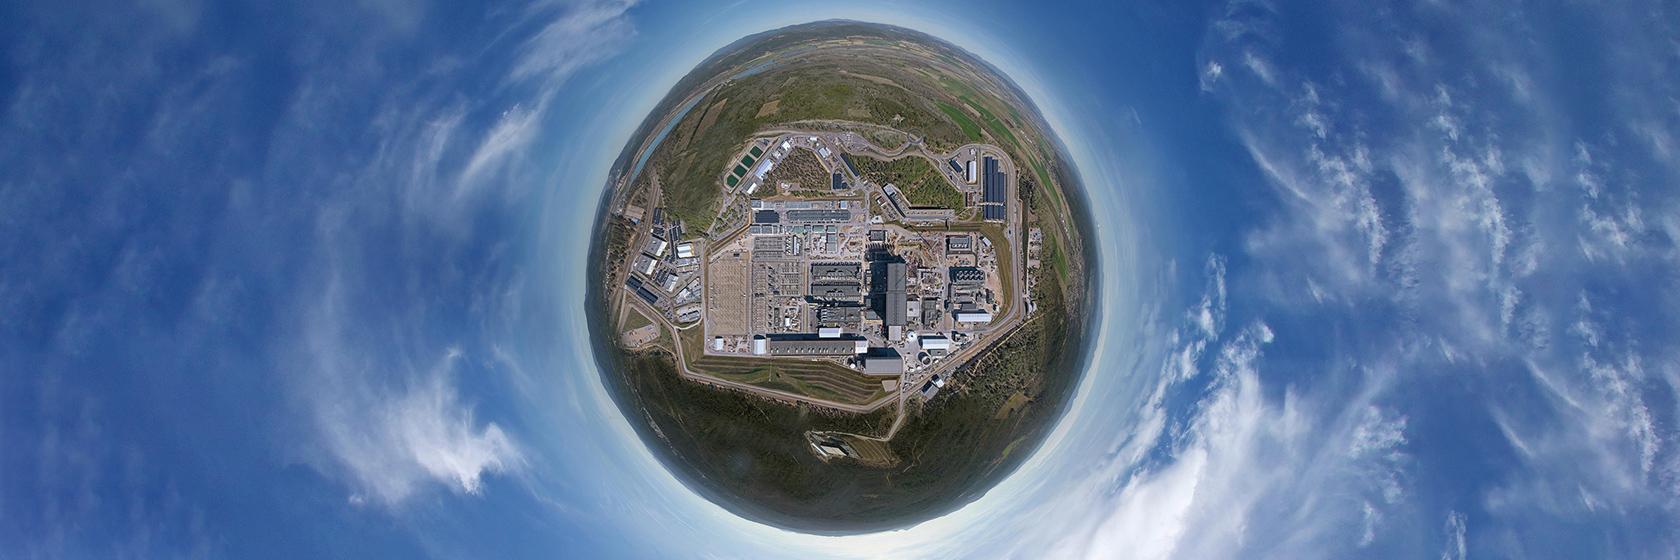 地上につくる小さな太陽ITER(イメージ)　©ITER Organization